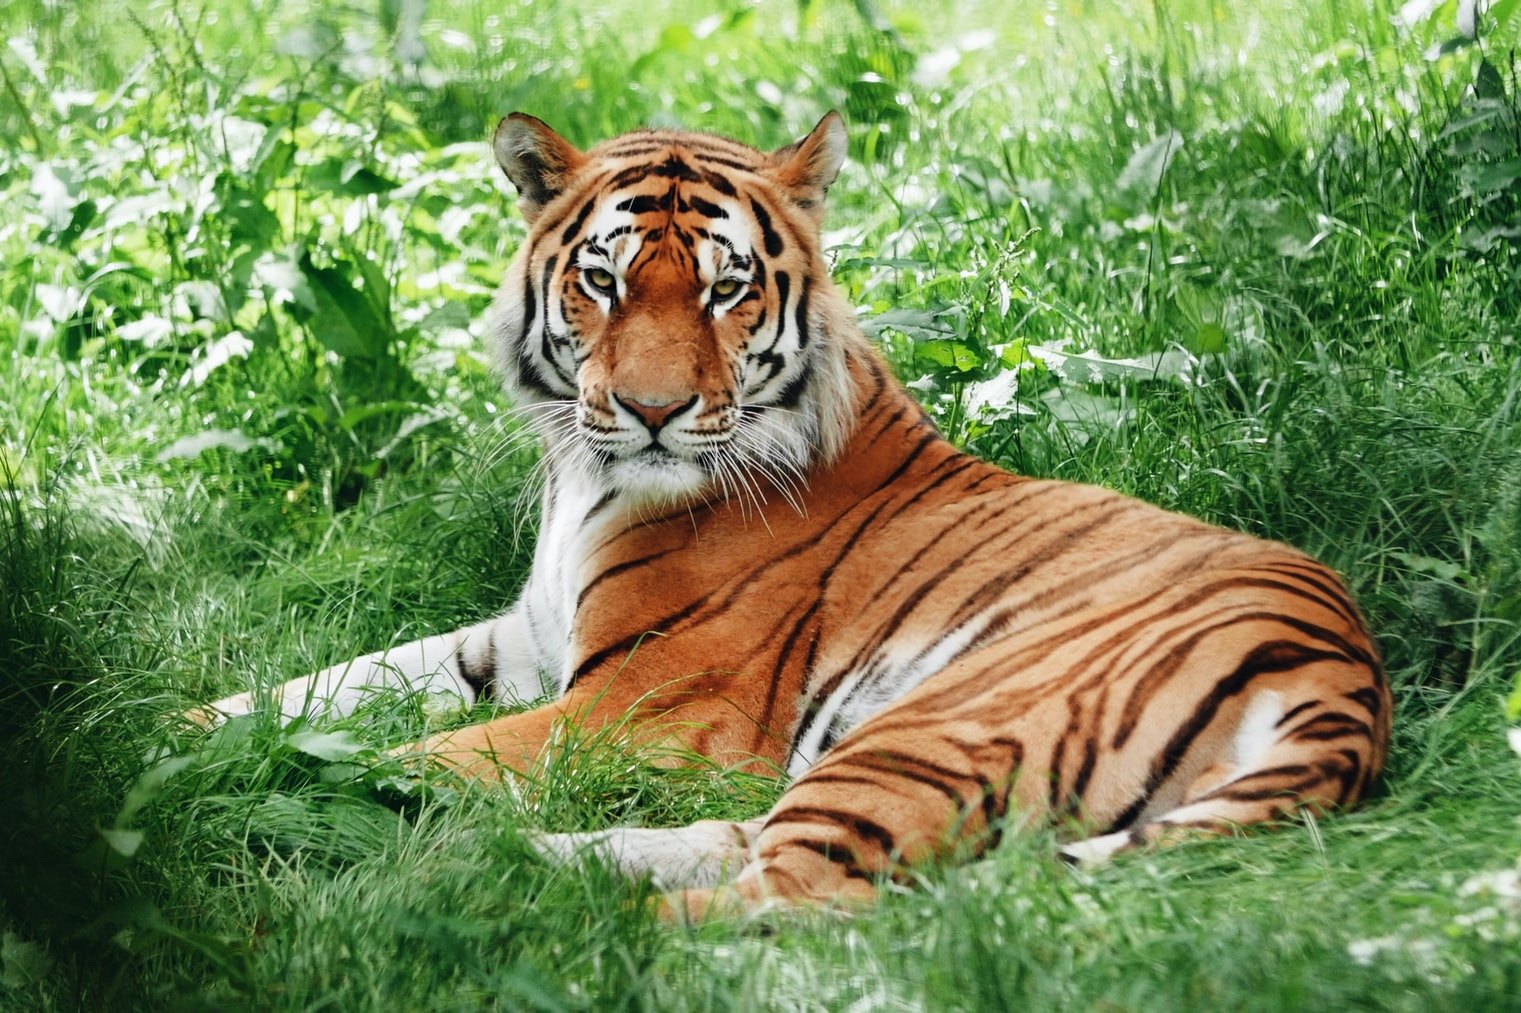 Почему тигр рыжий, если он живет среди зеленых деревьев: секрет хищника